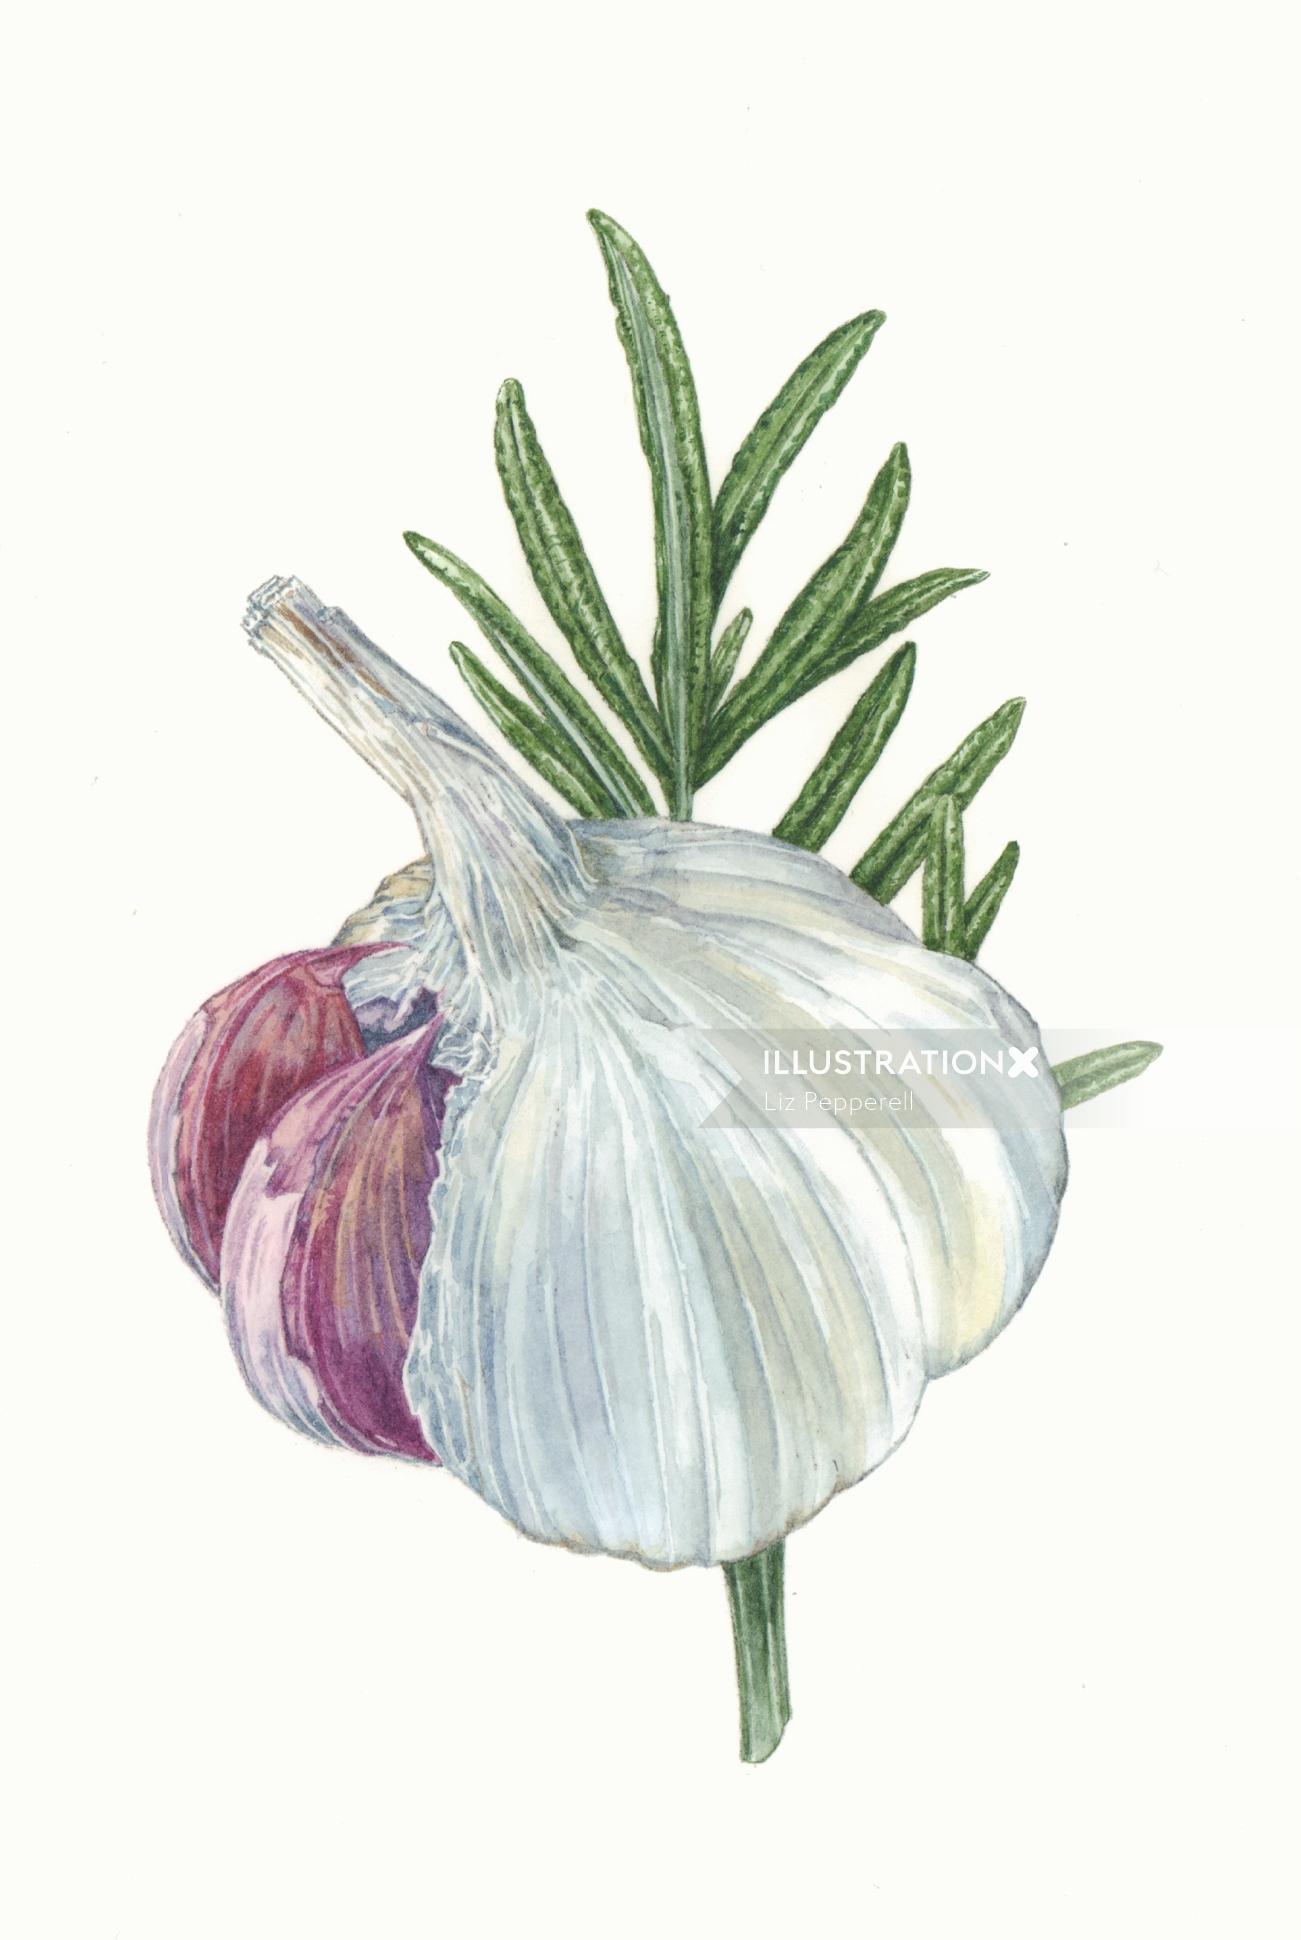 Food illustration of Garlic & Rosemary